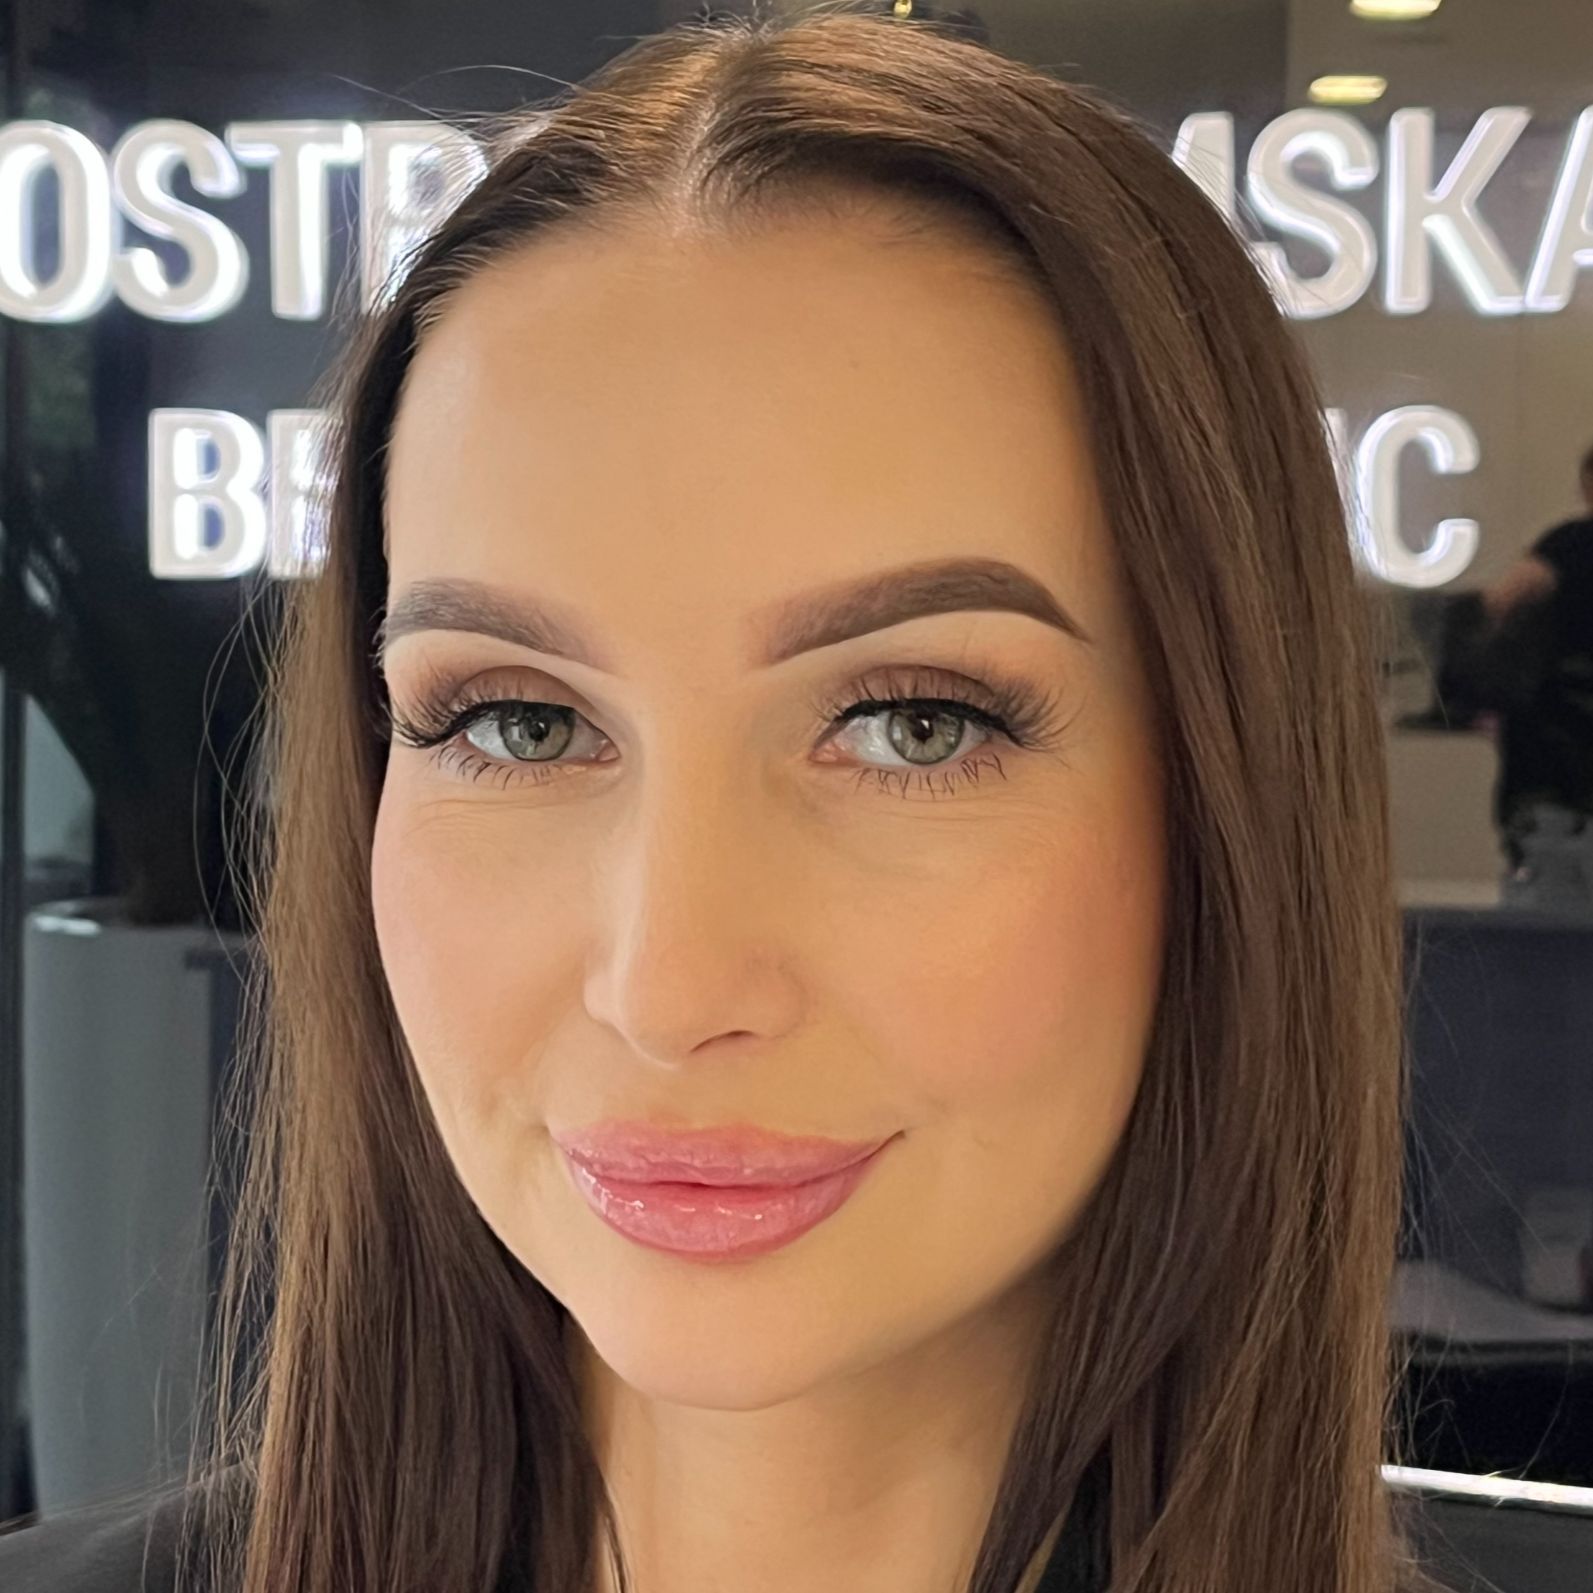 Małgorzata Fryzjer Stylista - Ostrobramska Beauty Clinic